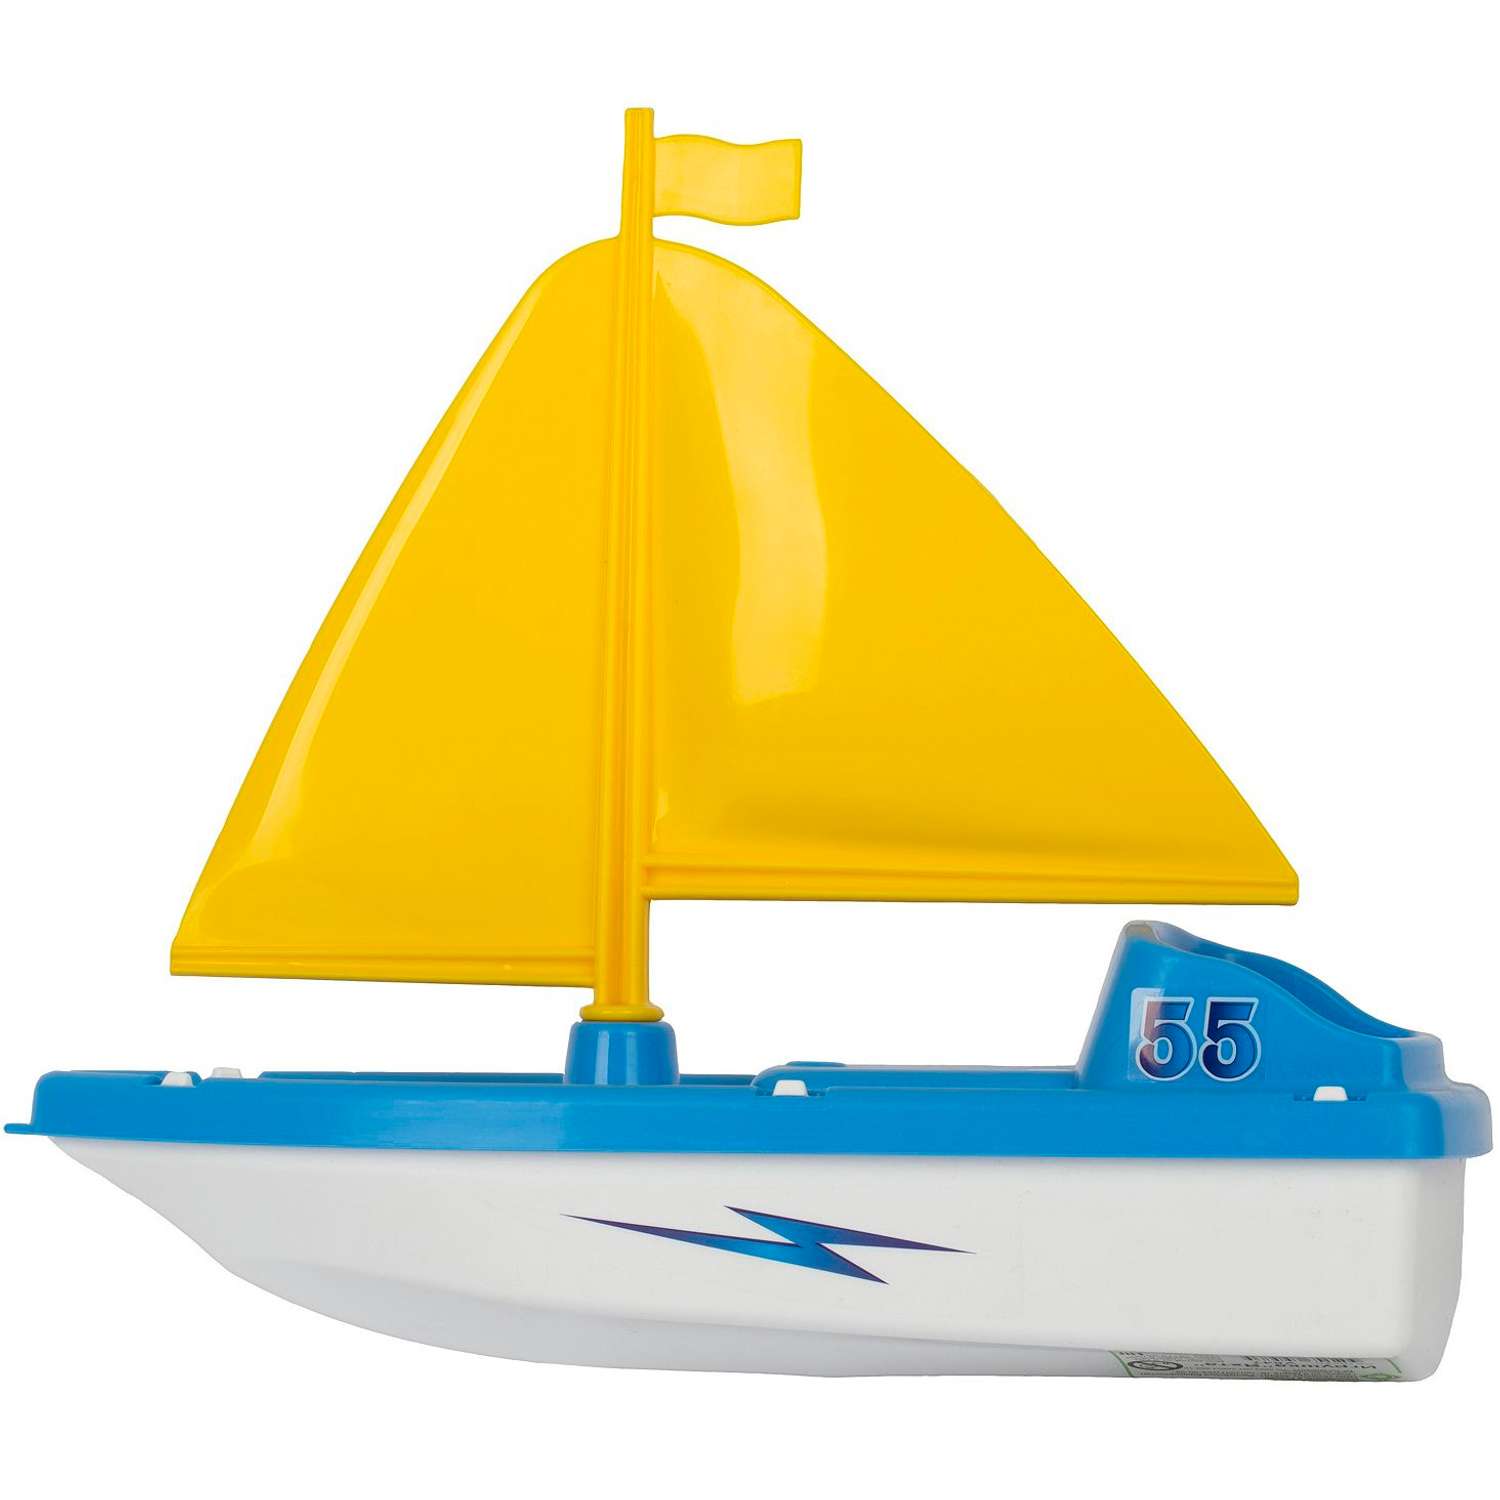 Водный Транспорт Стром Яхта Игрушка для Купания У547 - фото 2